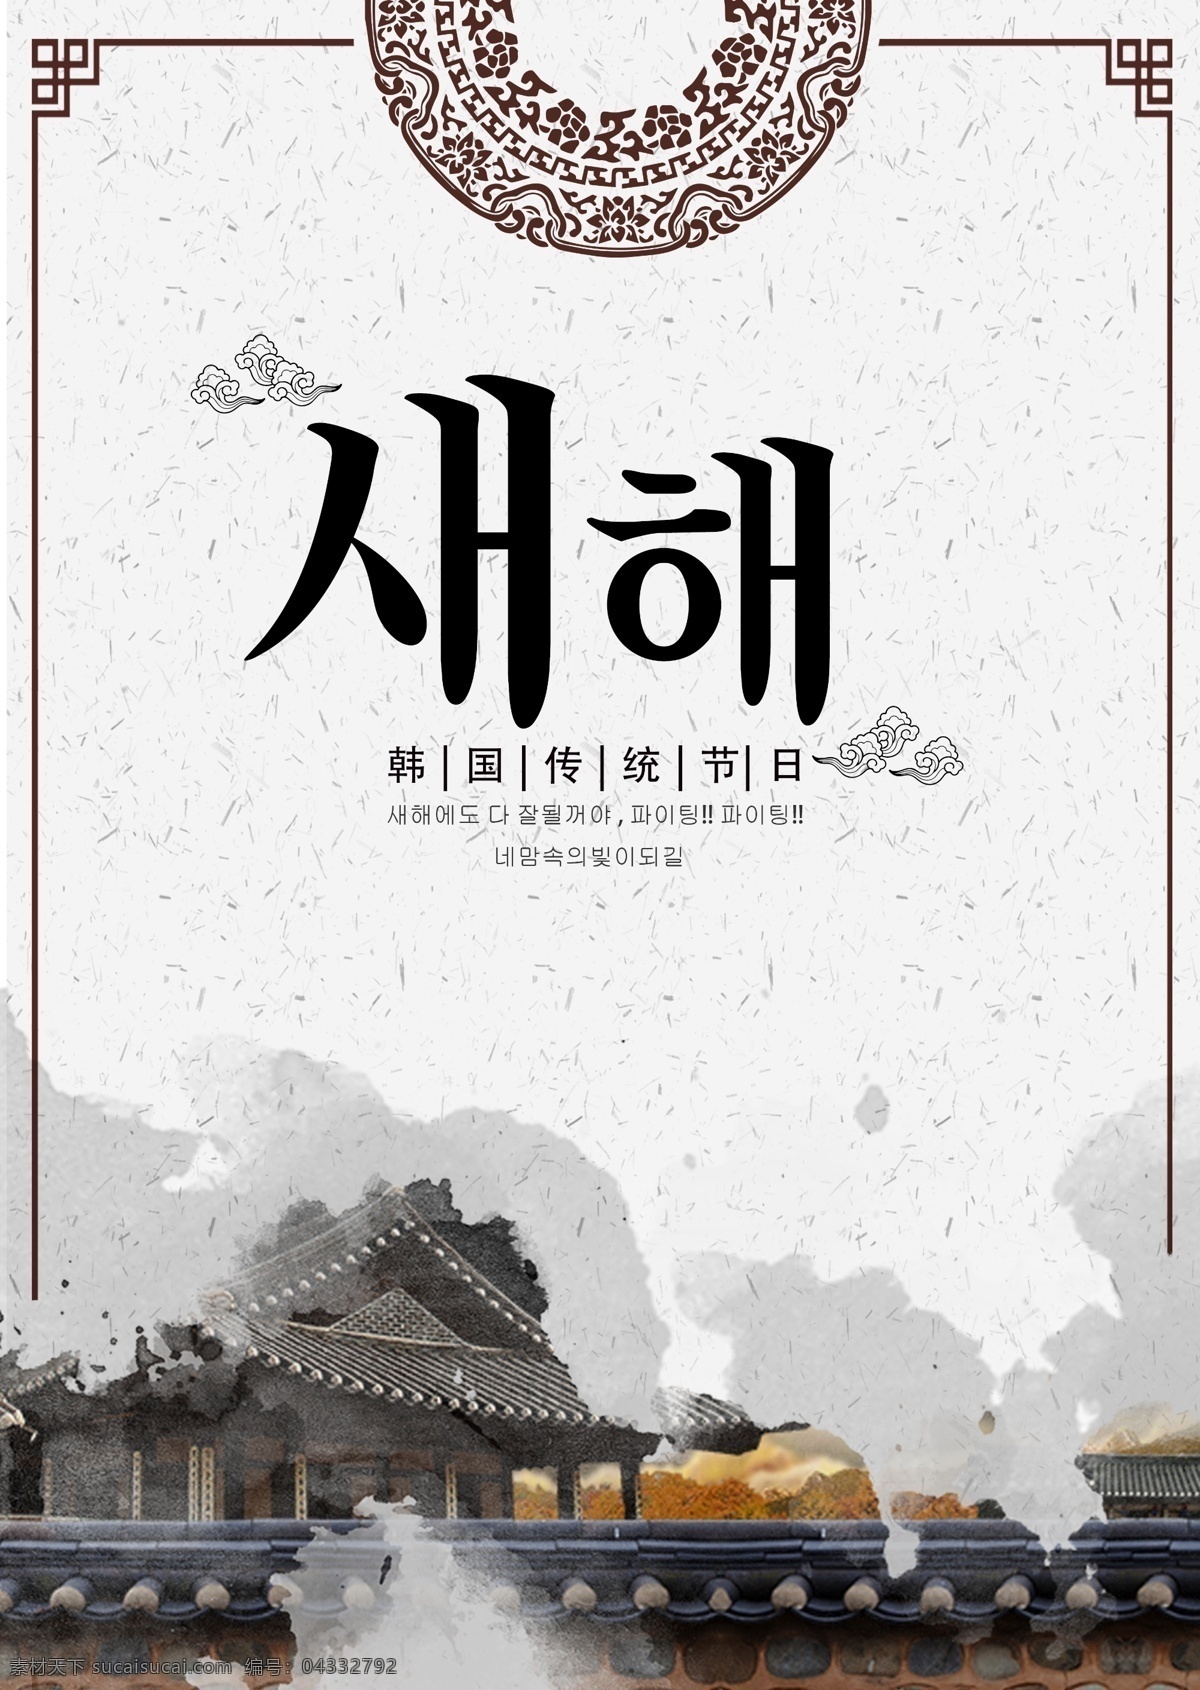 墨水 古典 韩国 新年 海报 墨 极简主义 朝鲜的 圈 白色 商标 团圆 宫 景观 打印